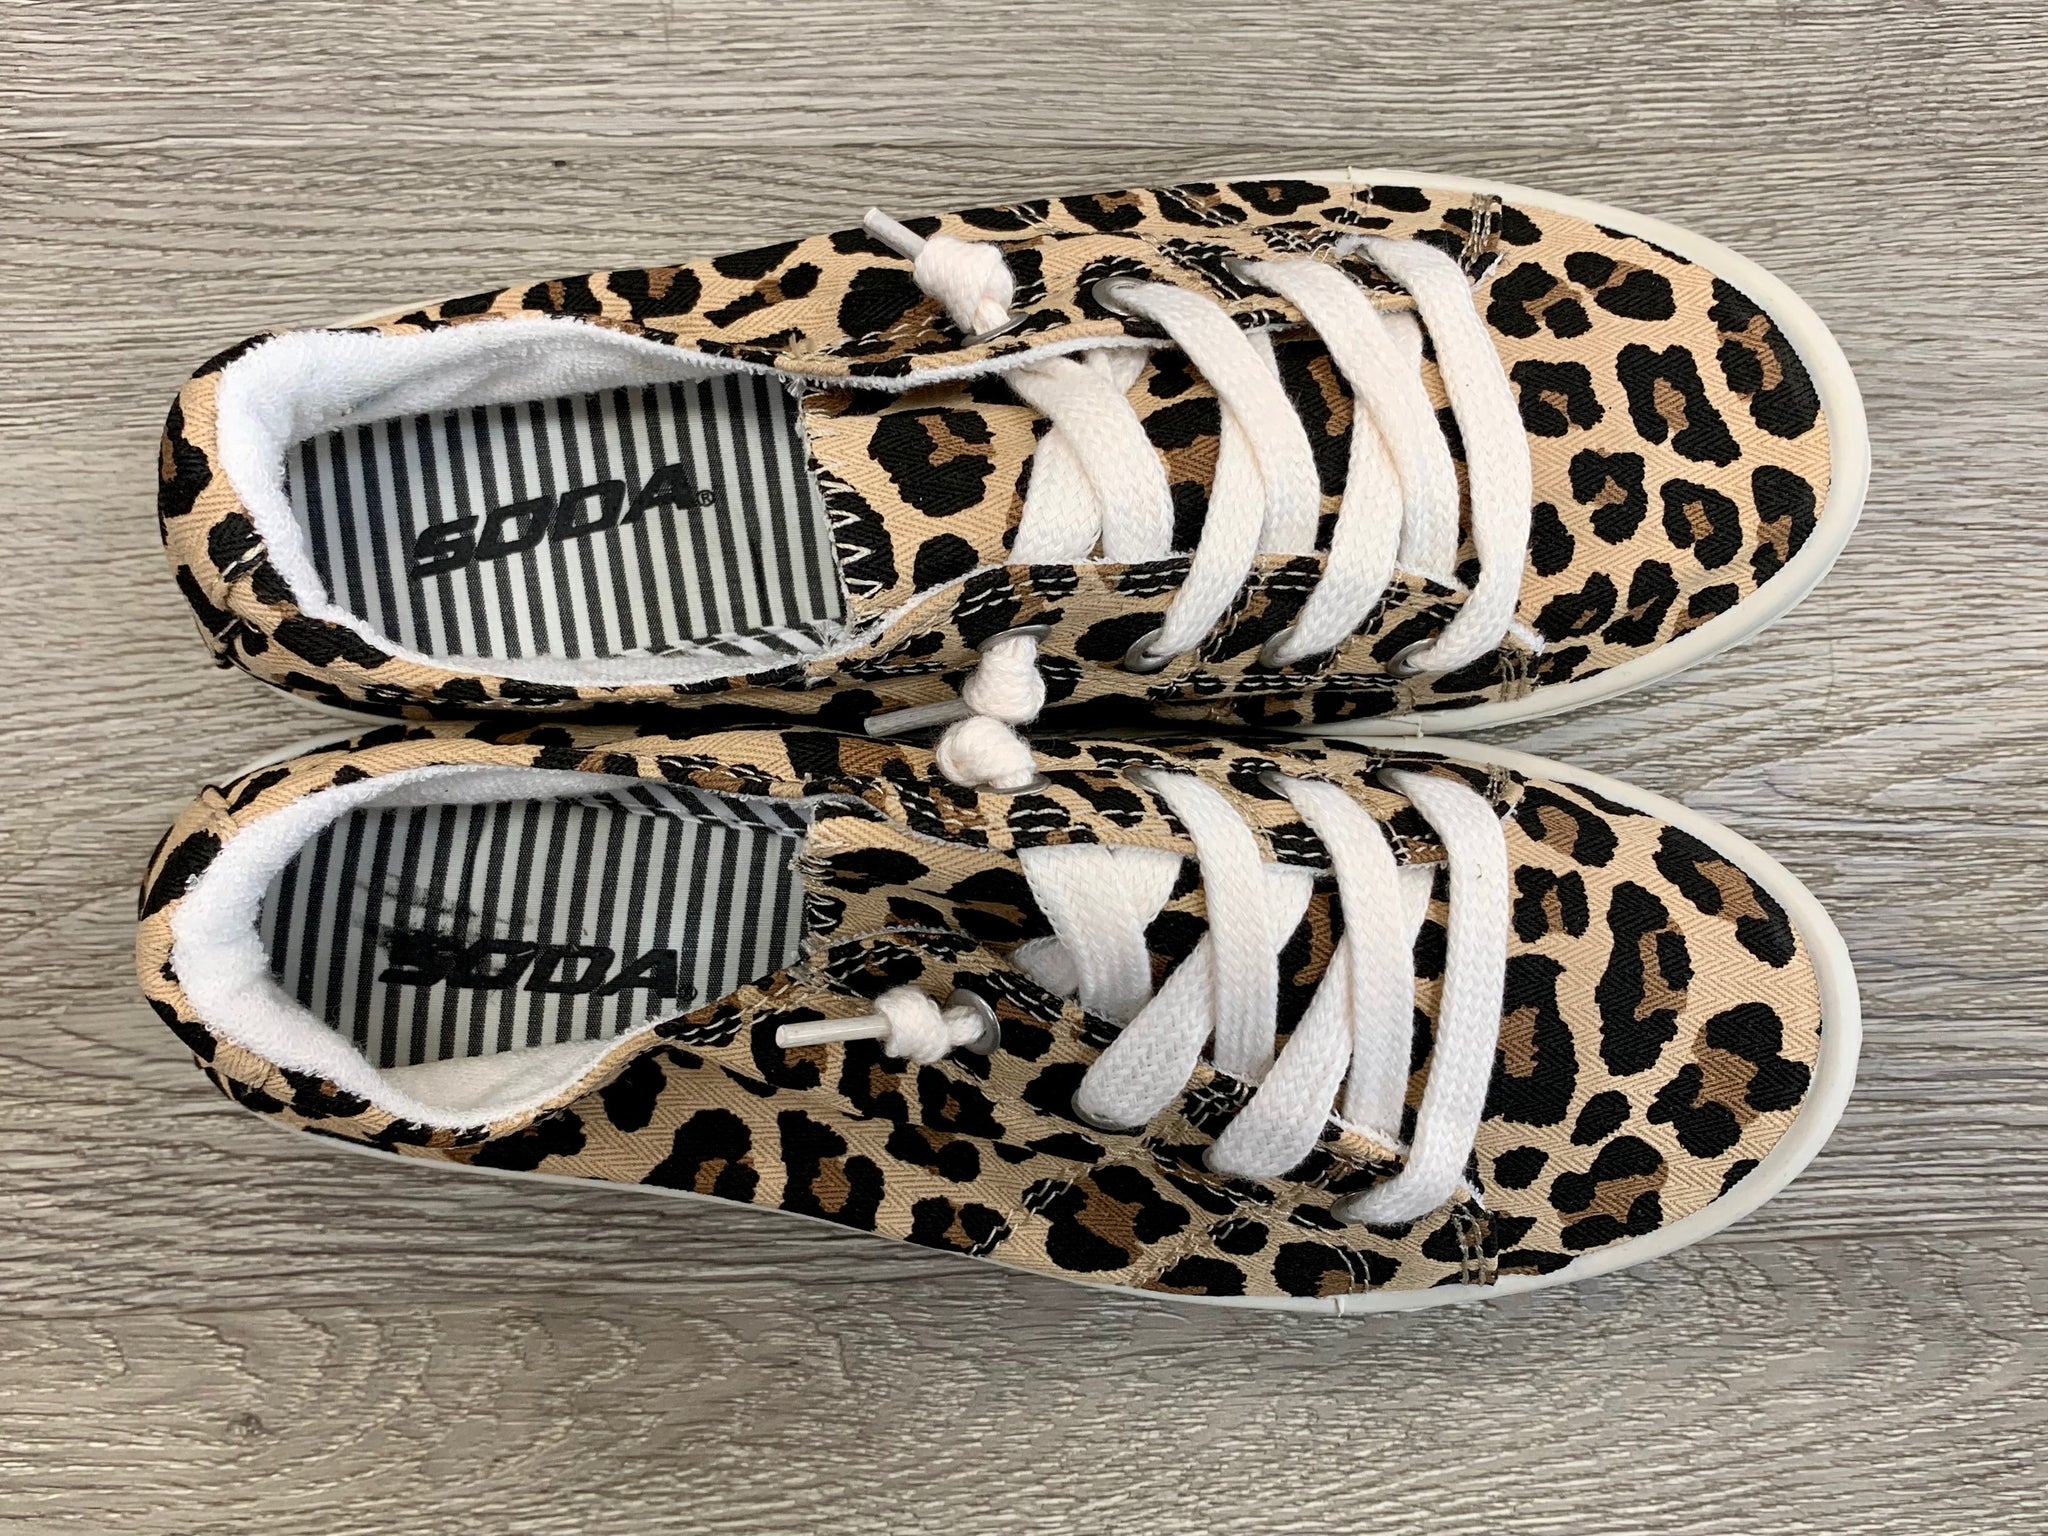 boutique leopard shoes